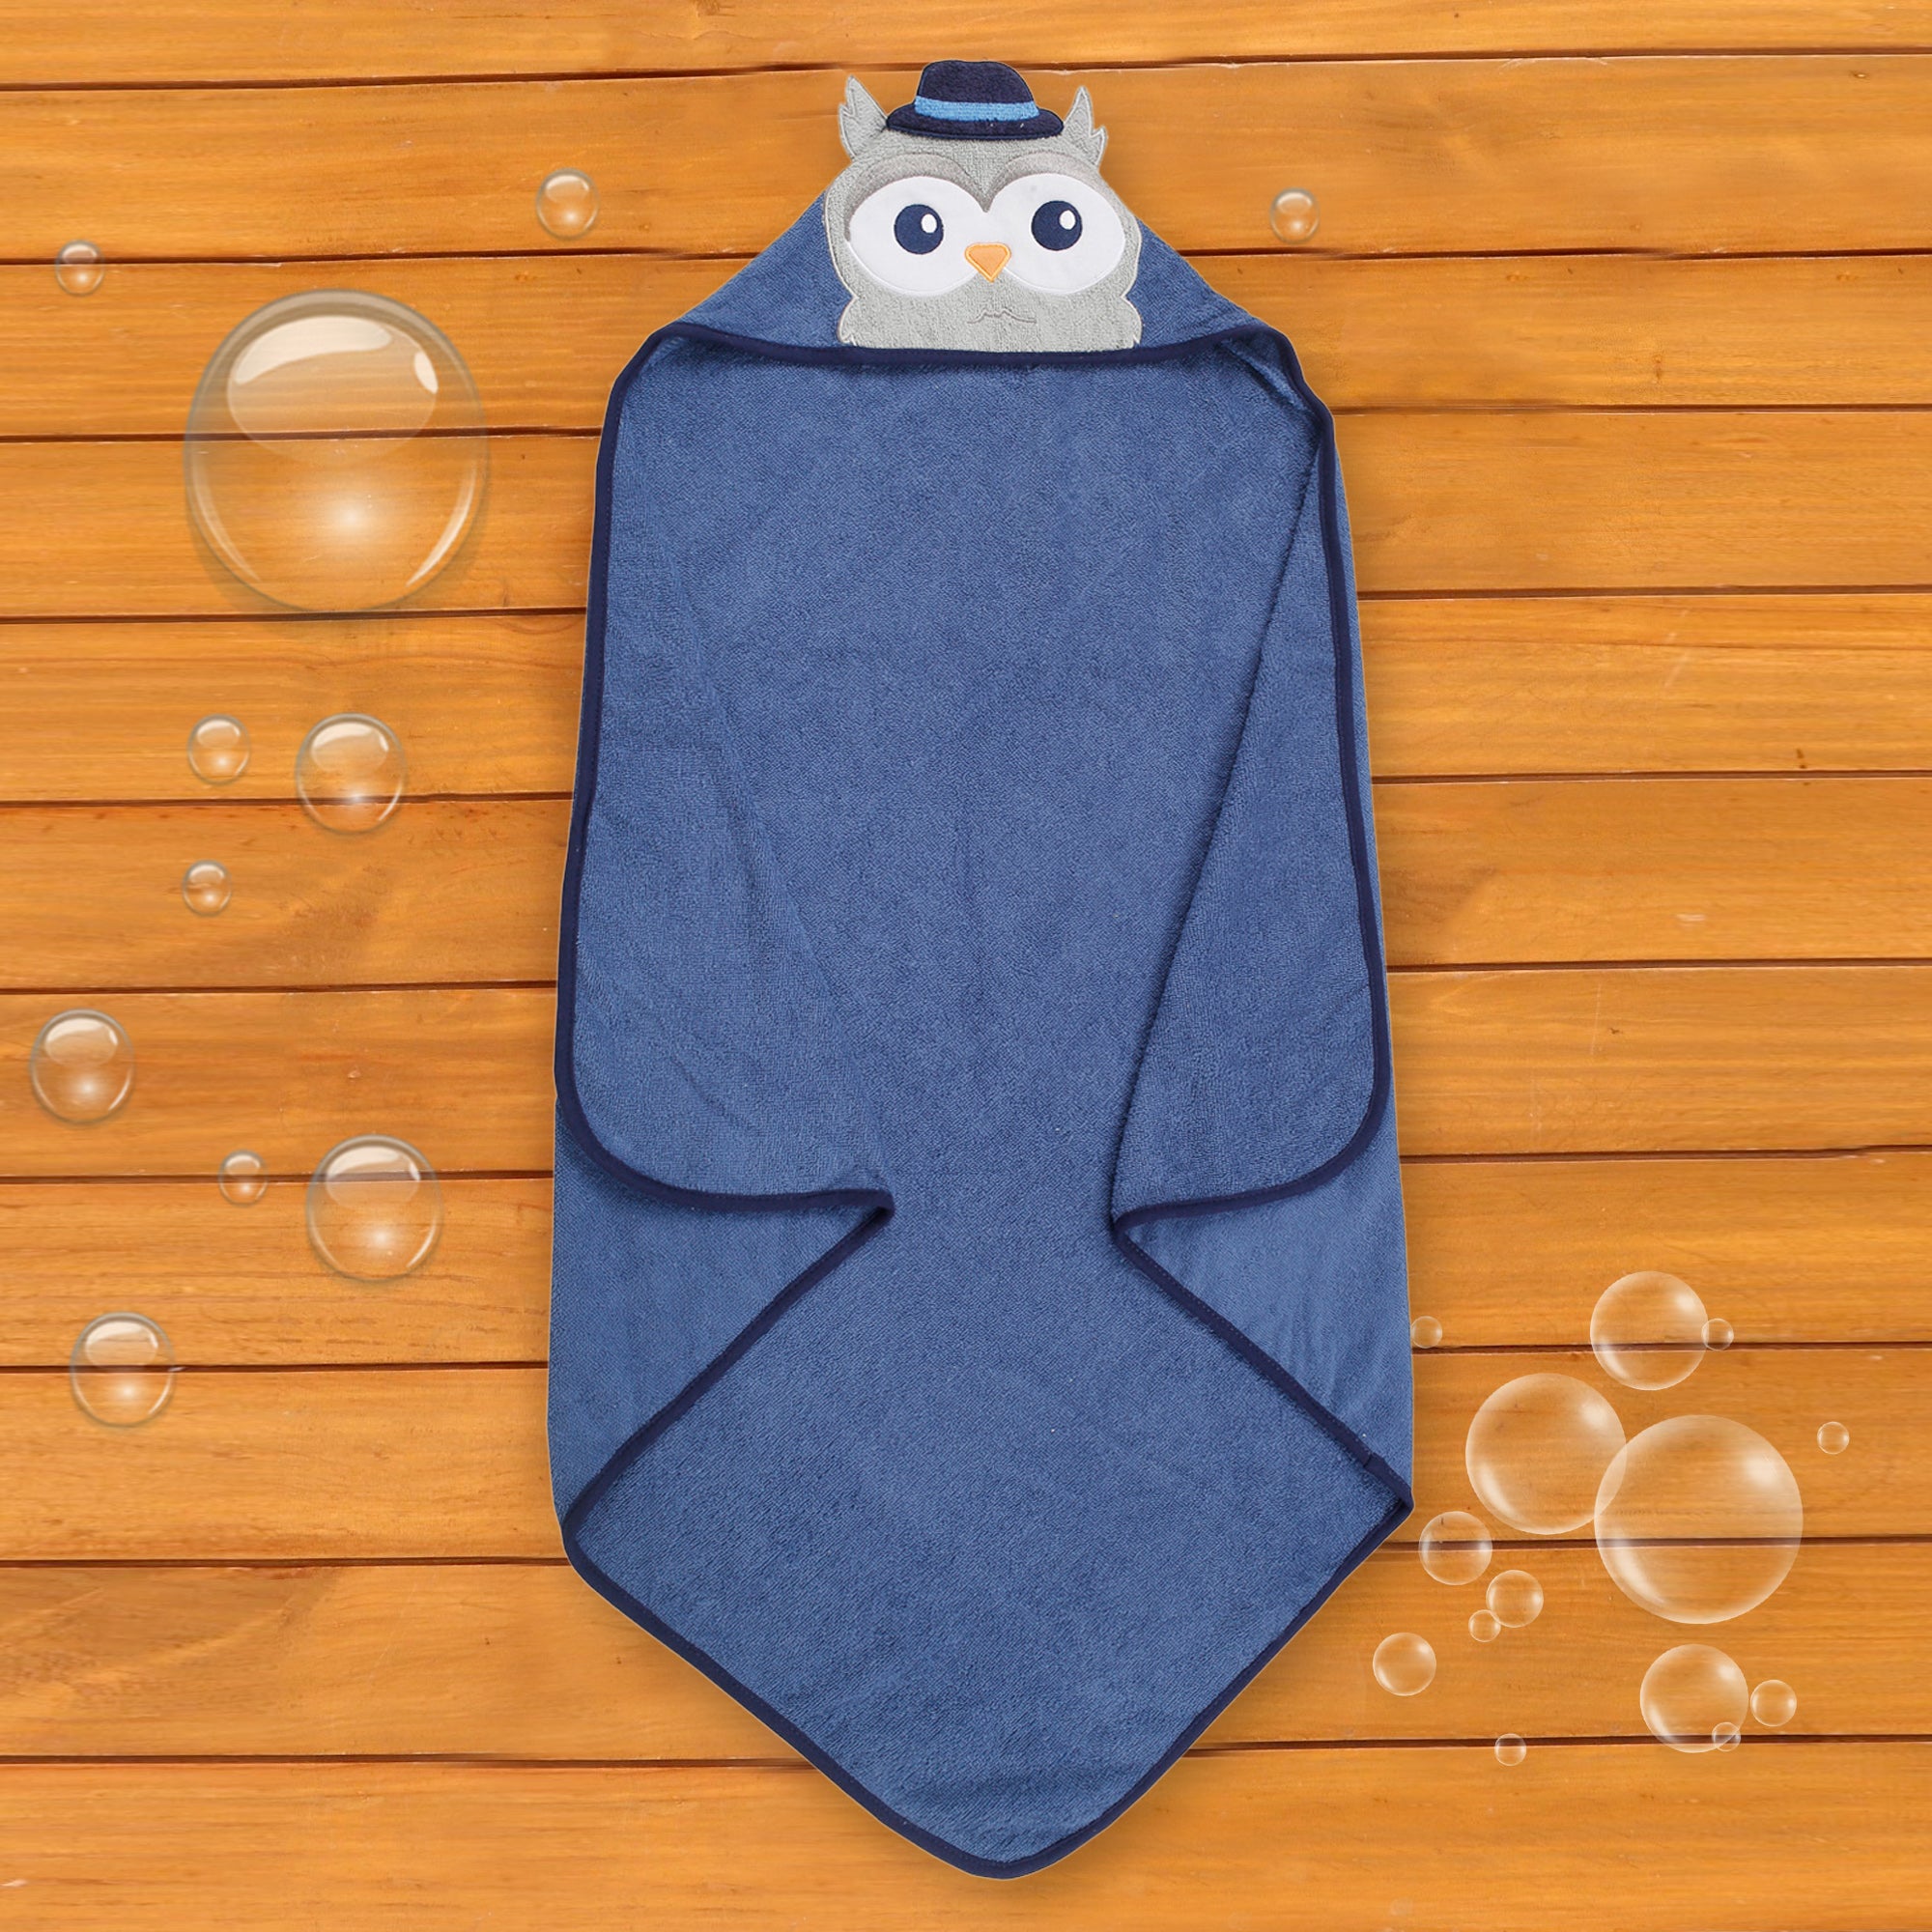 Mr. Owl Blue Hooded Towel - Baby Moo